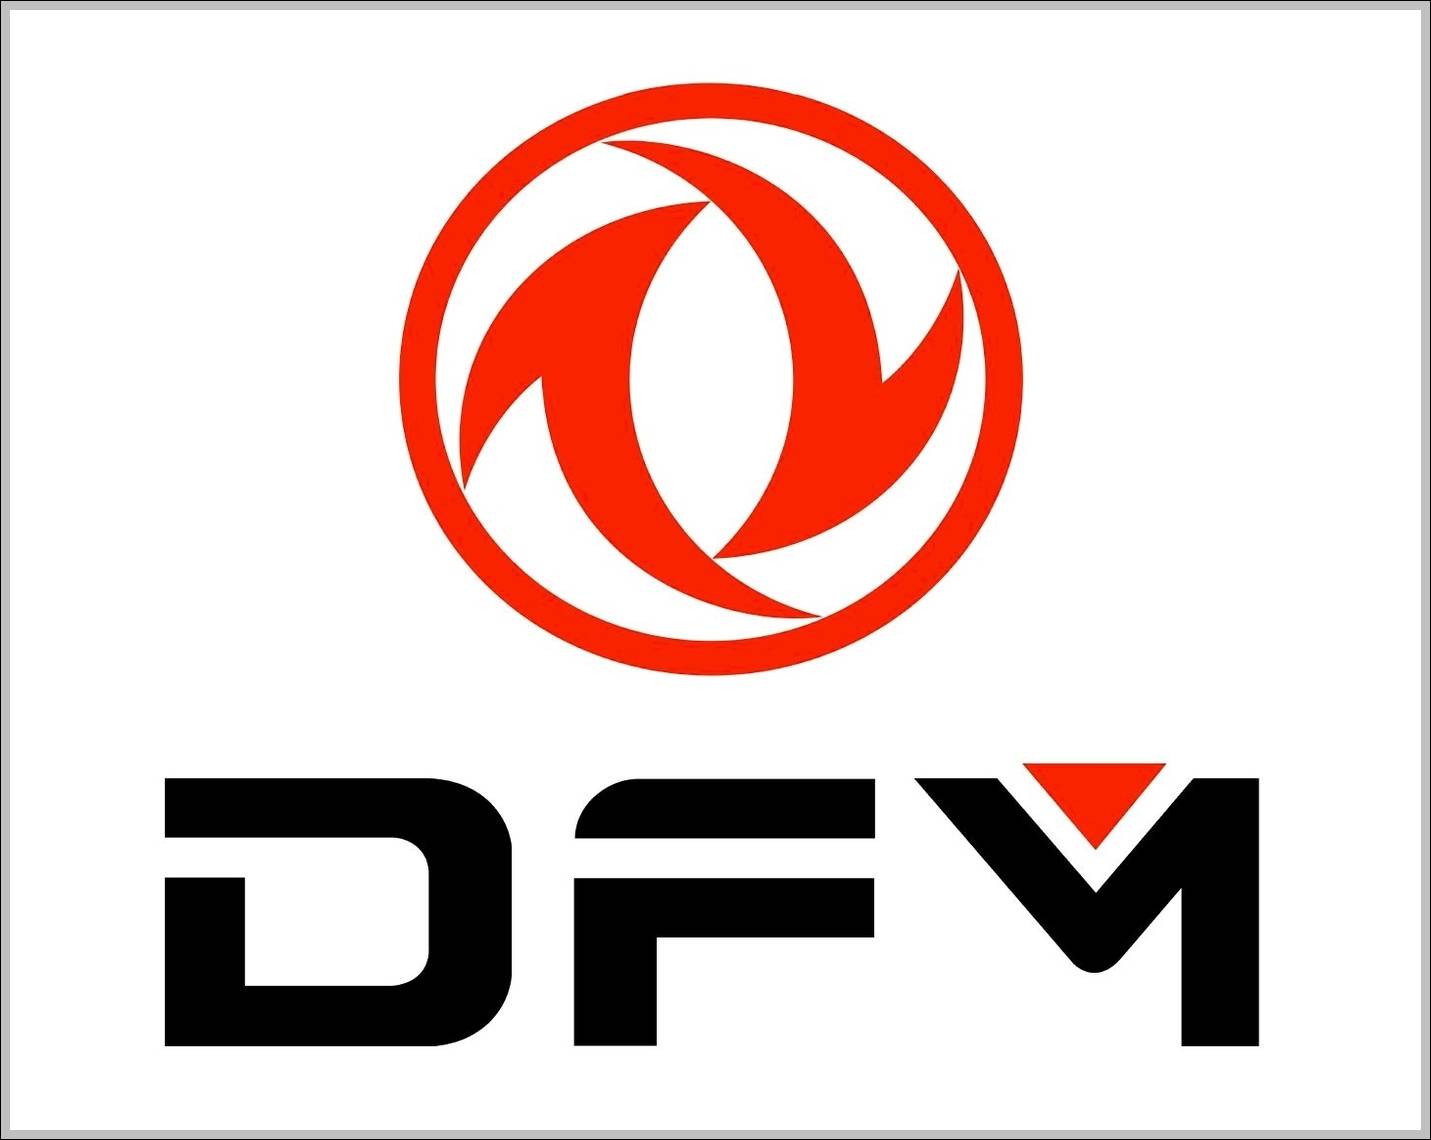 Dongfeng Motor logo